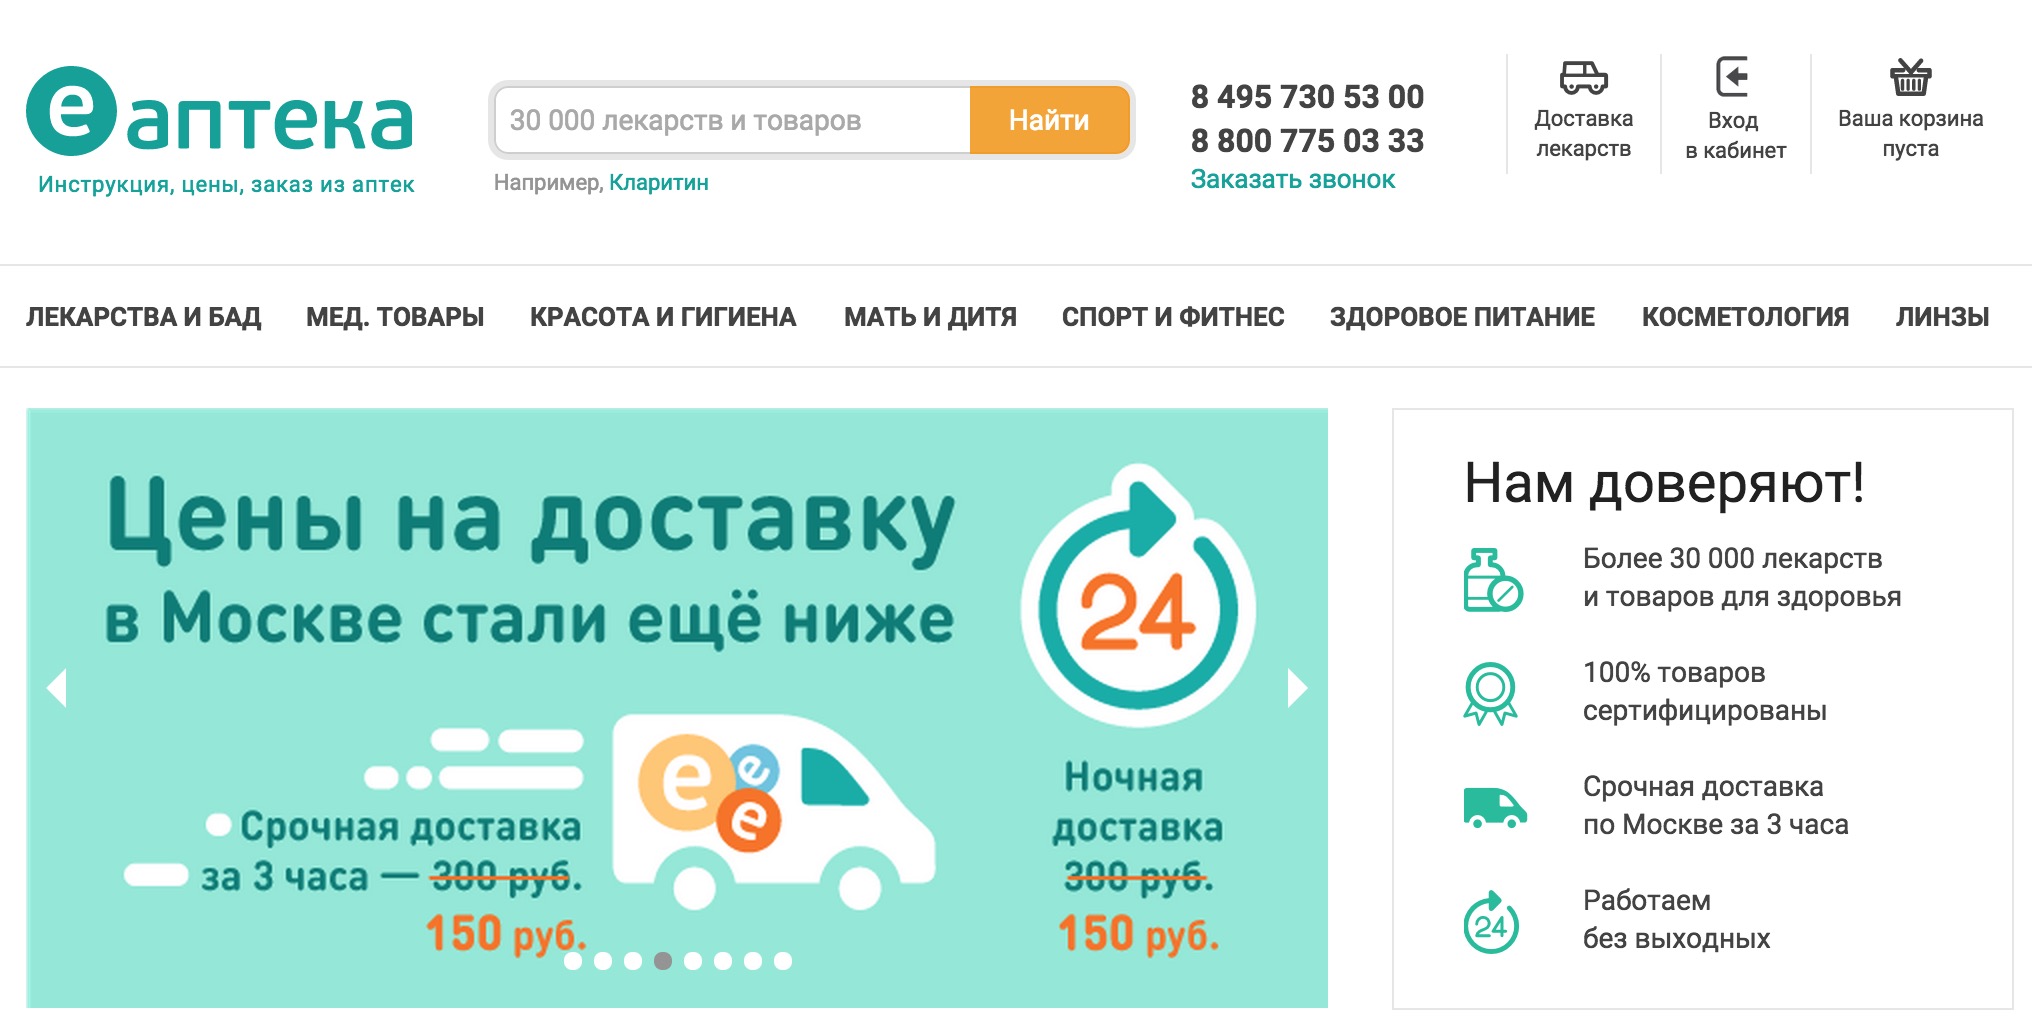 Еаптека доставка спб. Аптека интернет аптека. Е-аптека интернет аптека. Ver ru интернет аптека.